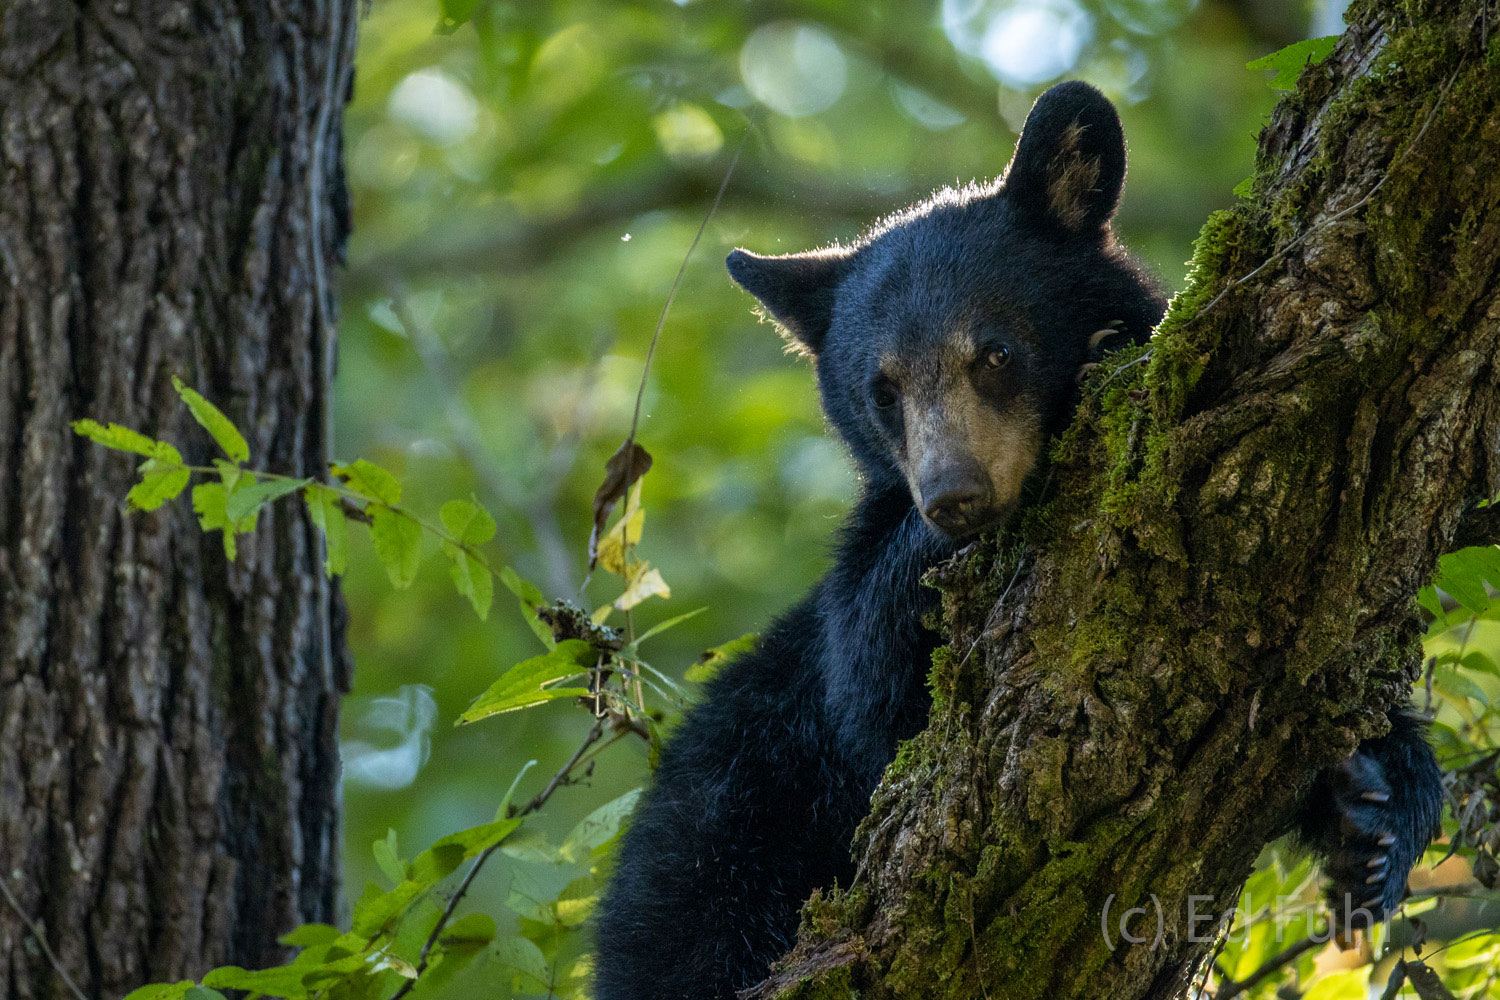 A black bear cub looks down from its perch on a walnut tree.